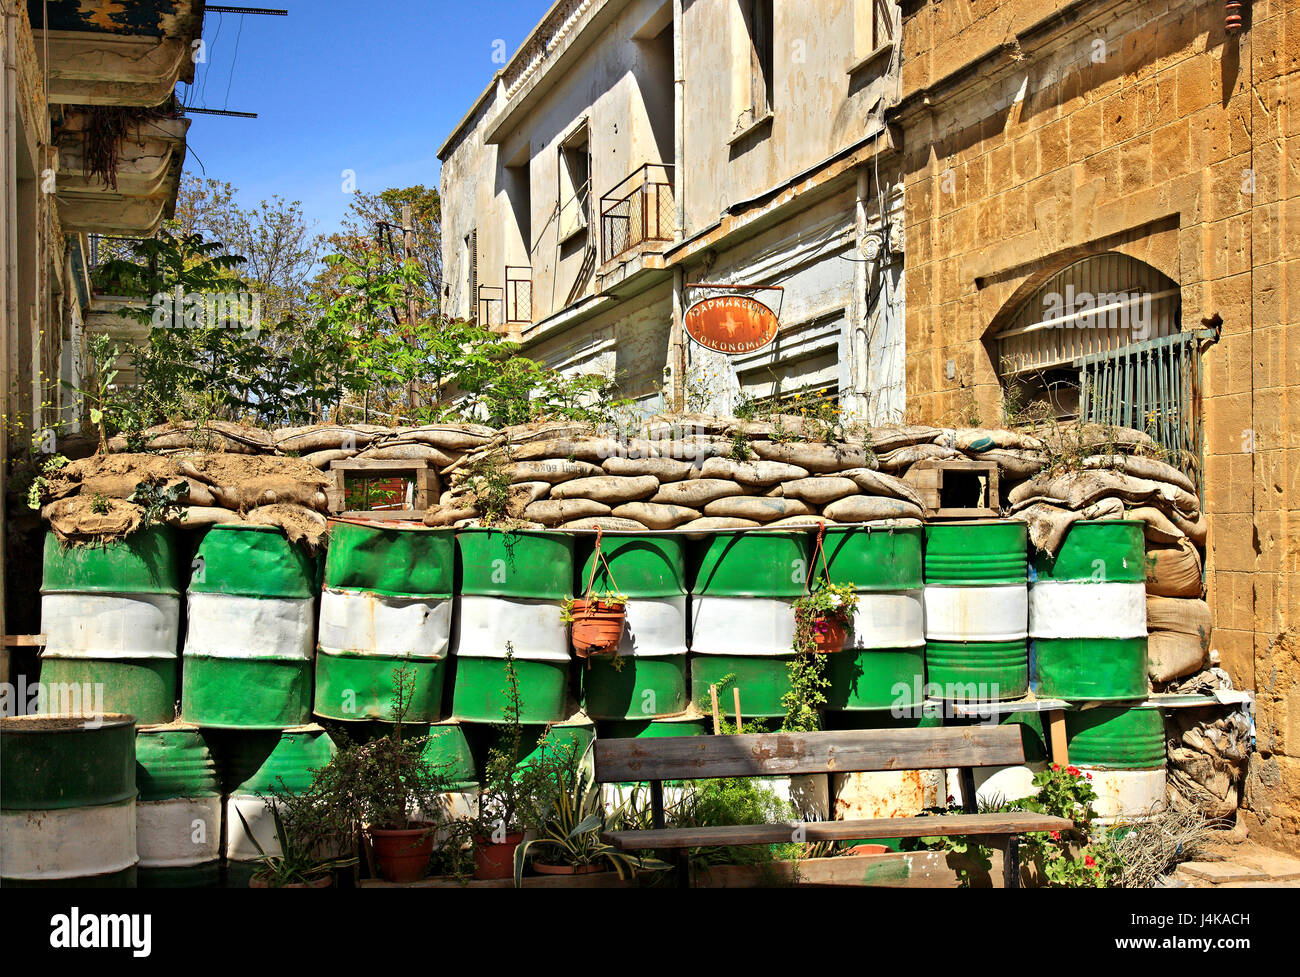 Une partie de la "ligne verte" ('zone tampon' ou 'Dead Zone') dans la vieille ville de Lefkosia (Nicosie), la dernière capitale divisée au monde. Chypre Banque D'Images